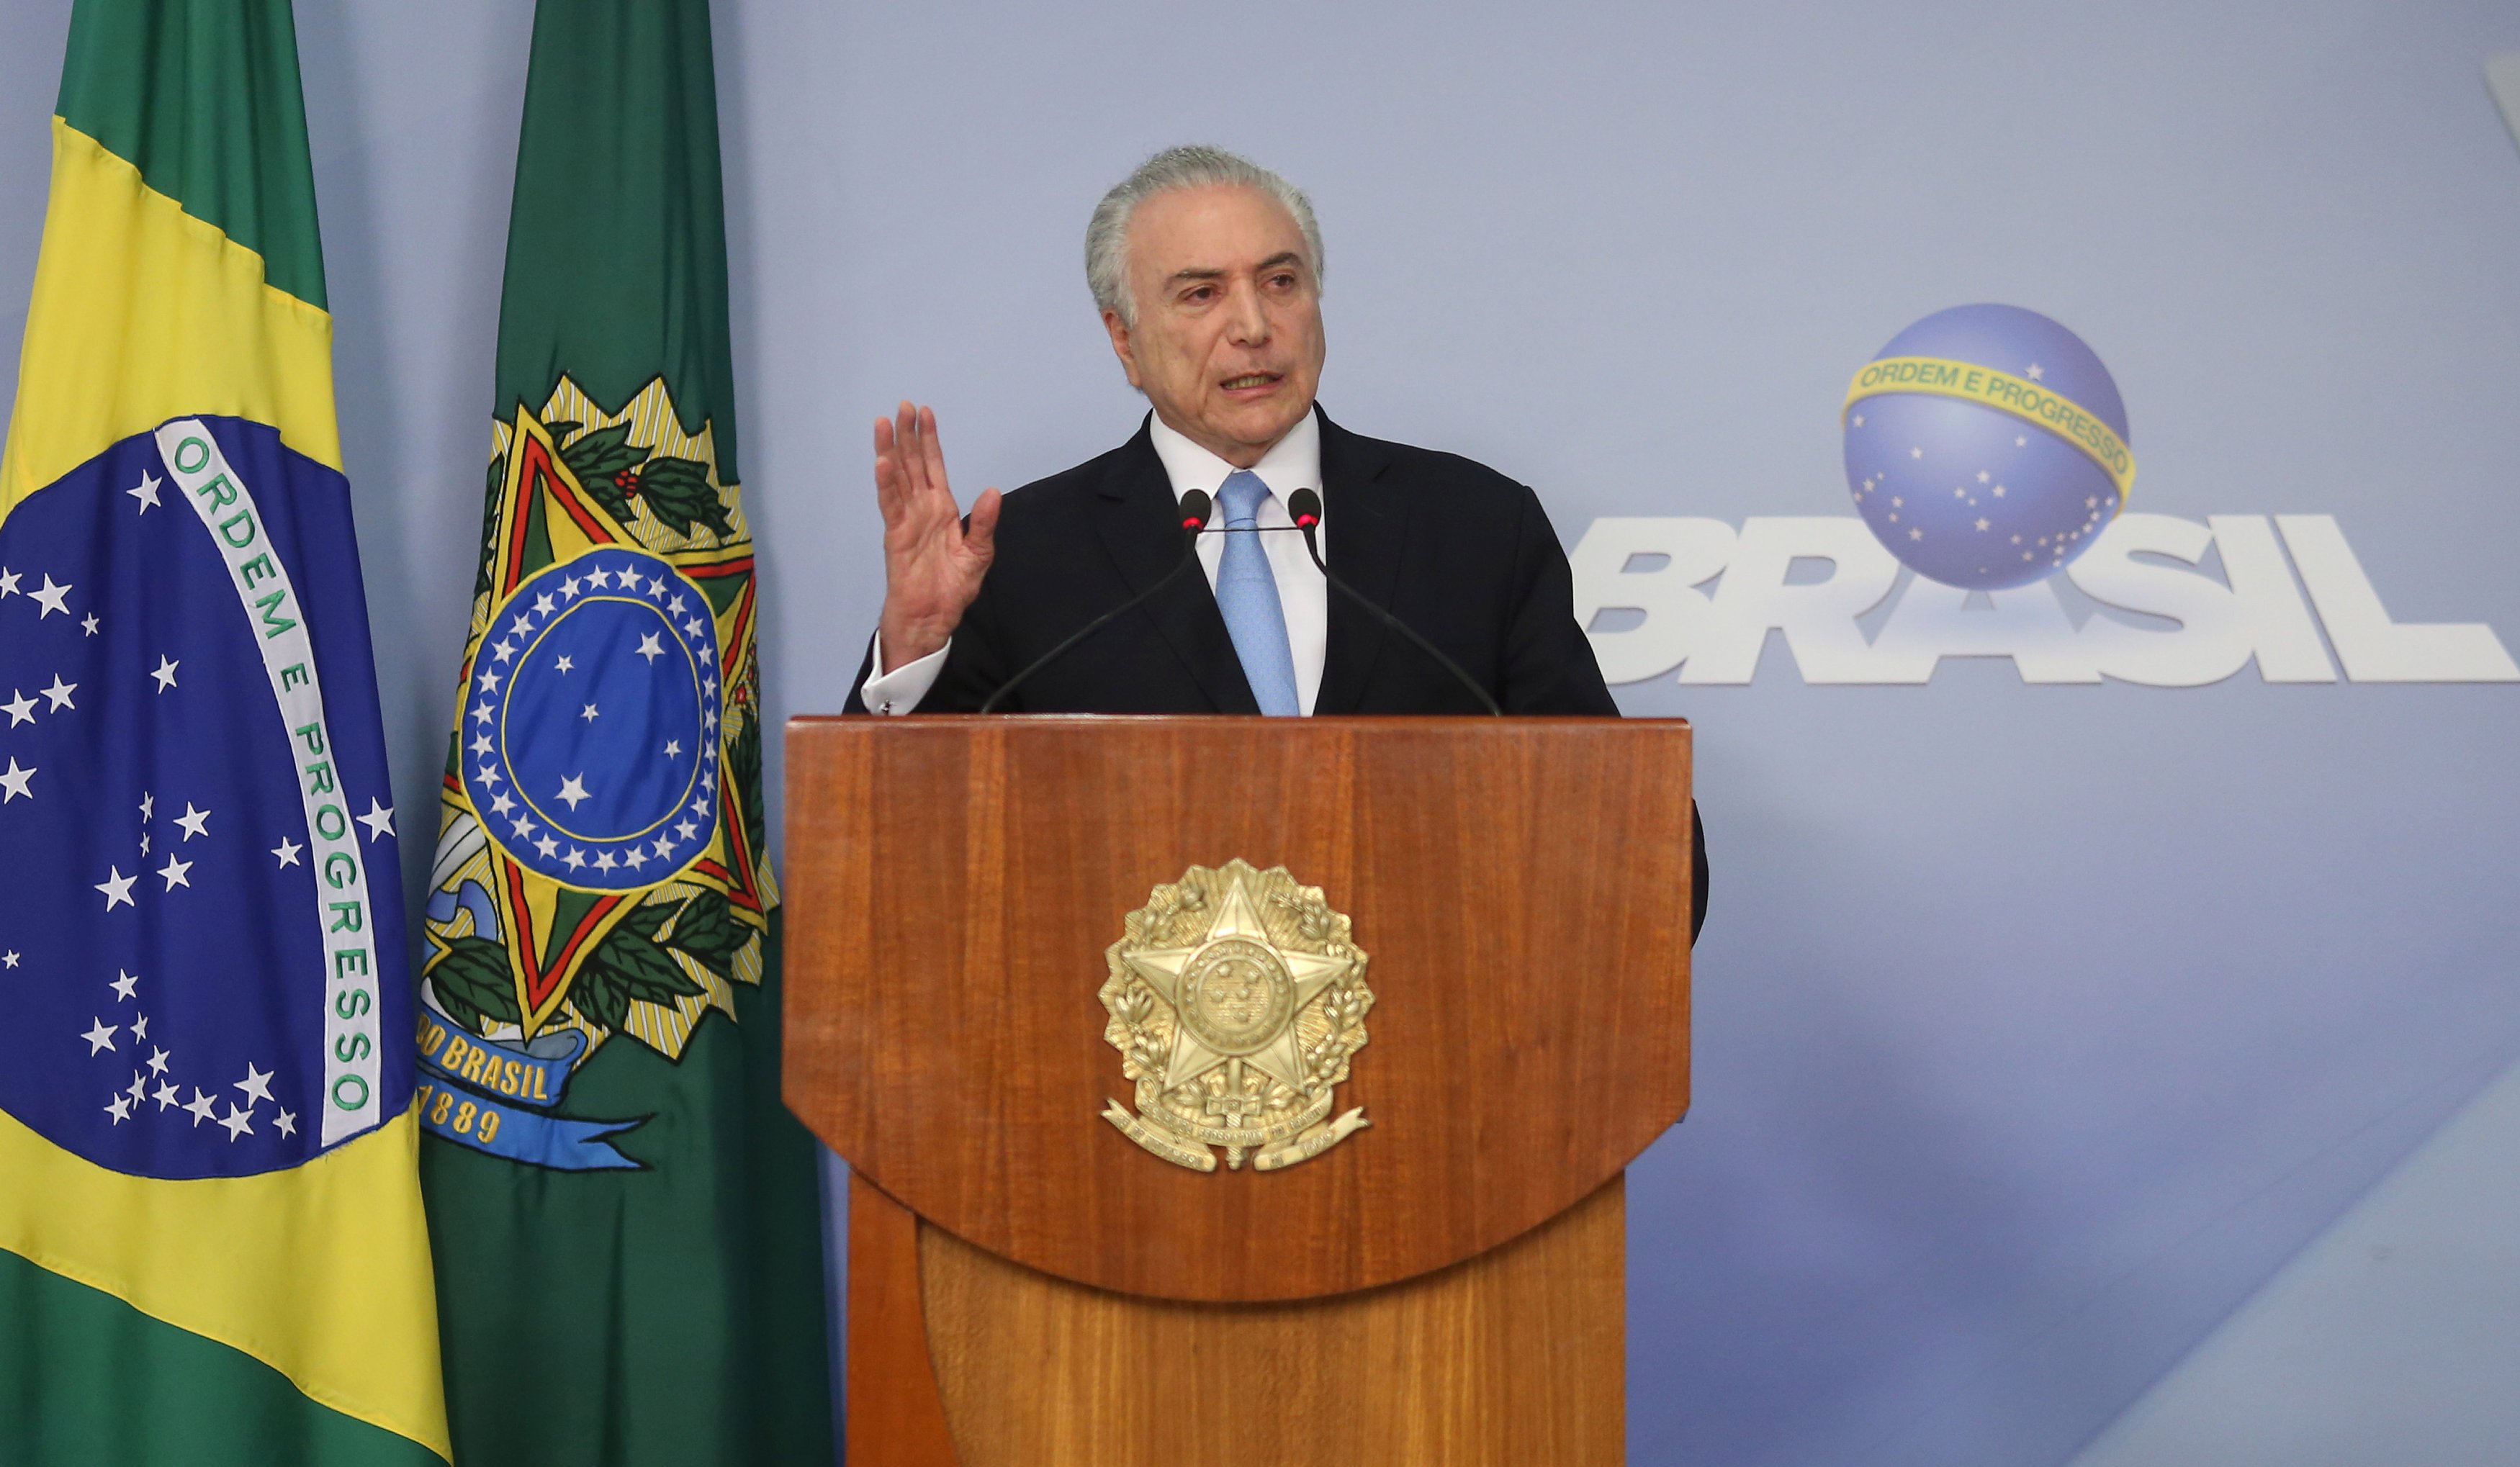 الرئيس البرازيلى يلقى خطاب داخل المجلس